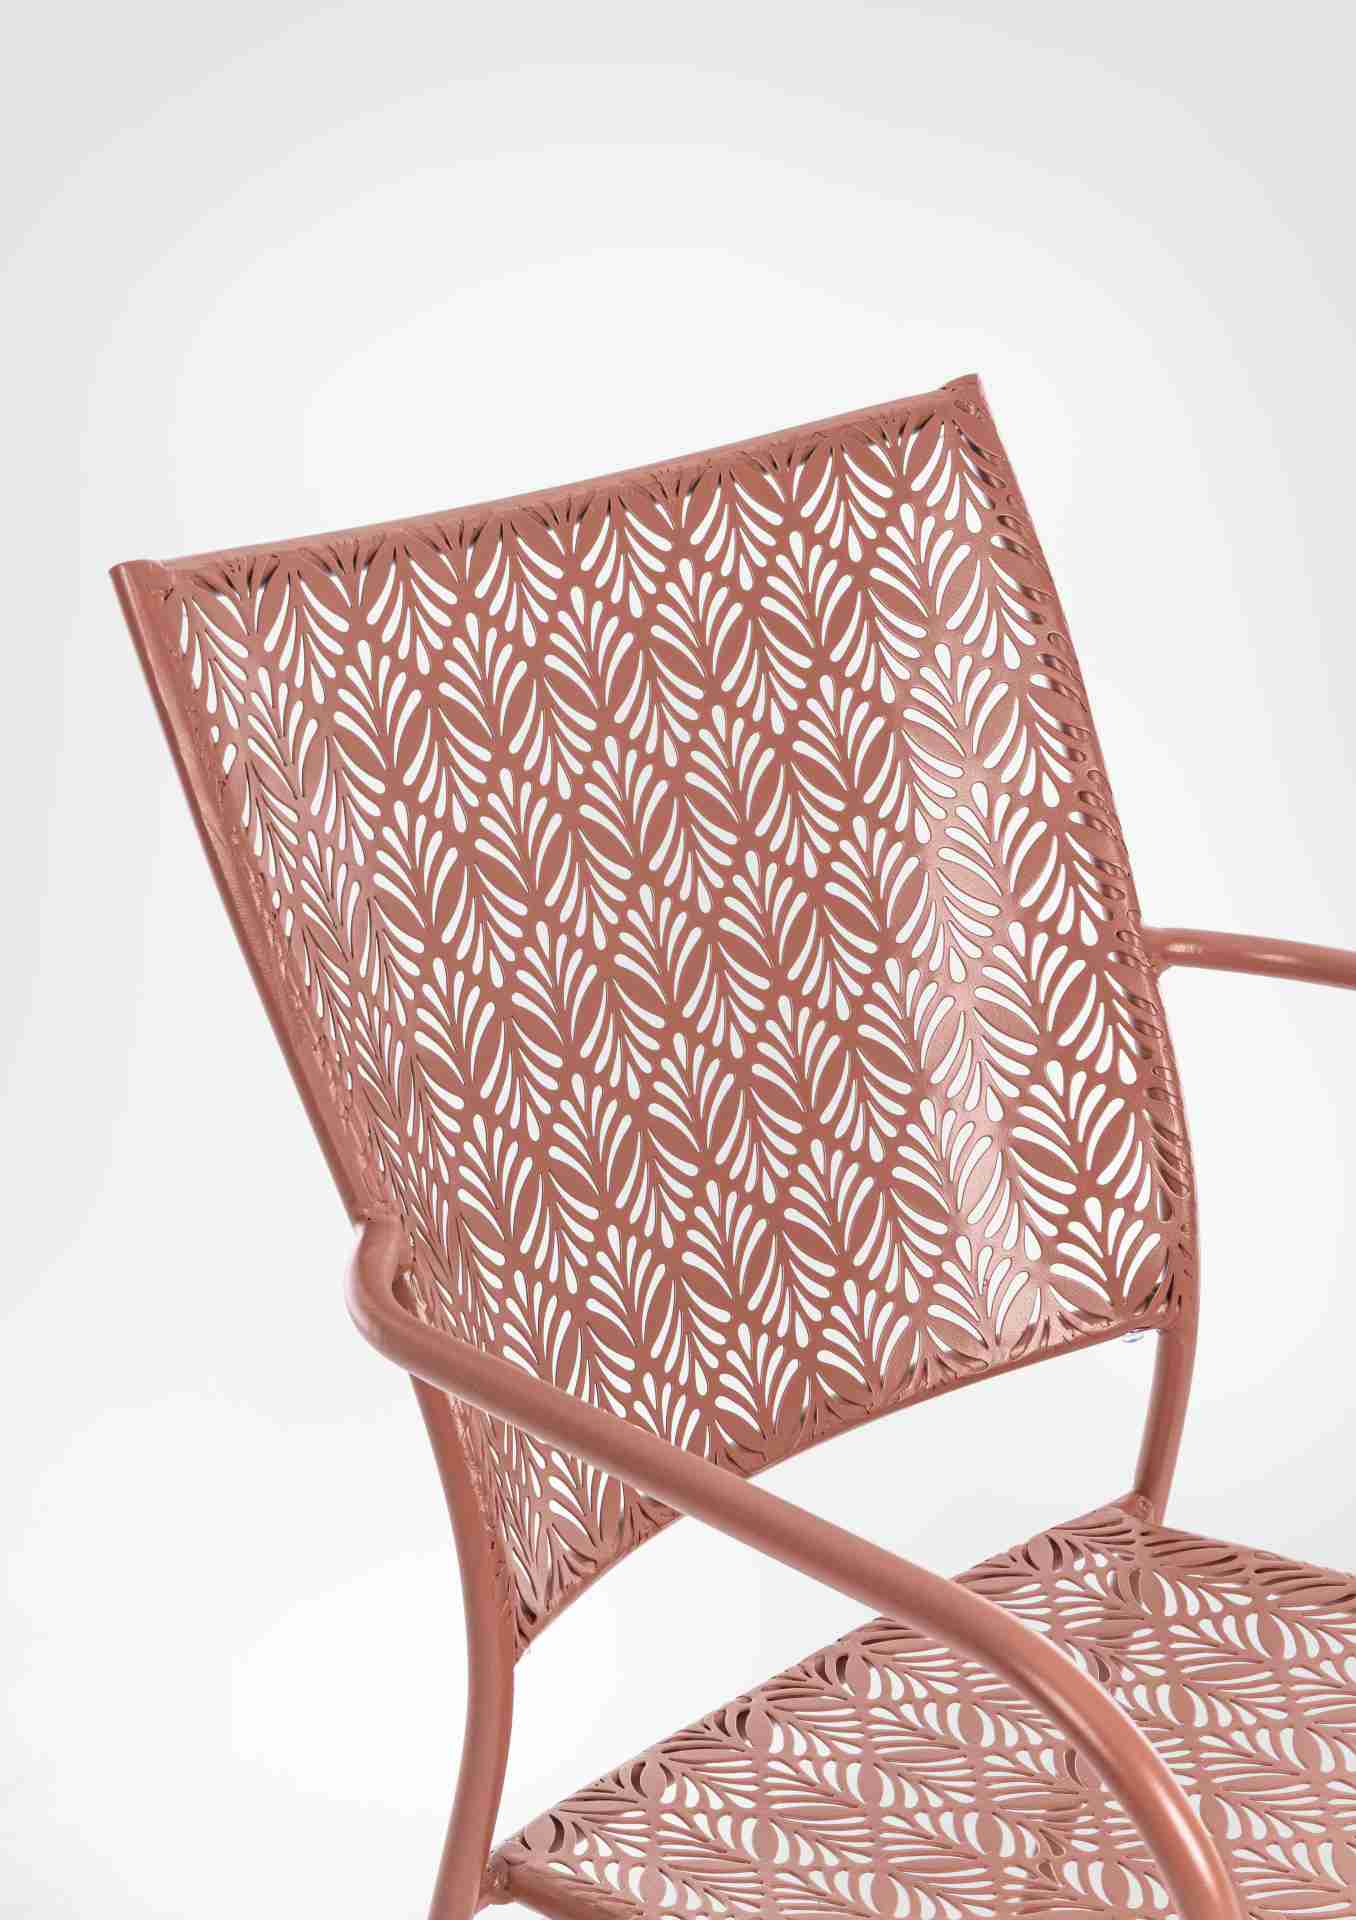 Der Gartenstuhl Lizette überzeugt mit seinem klassischen Design. Gefertigt wurde er aus Aluminium, welches einen roten Farbton besitzen. Das Gestell ist aus Aluminium und hat eine rote Farbe. Der Stuhl verfügt über eine Sitzhöhe von 45 cm und ist für den 